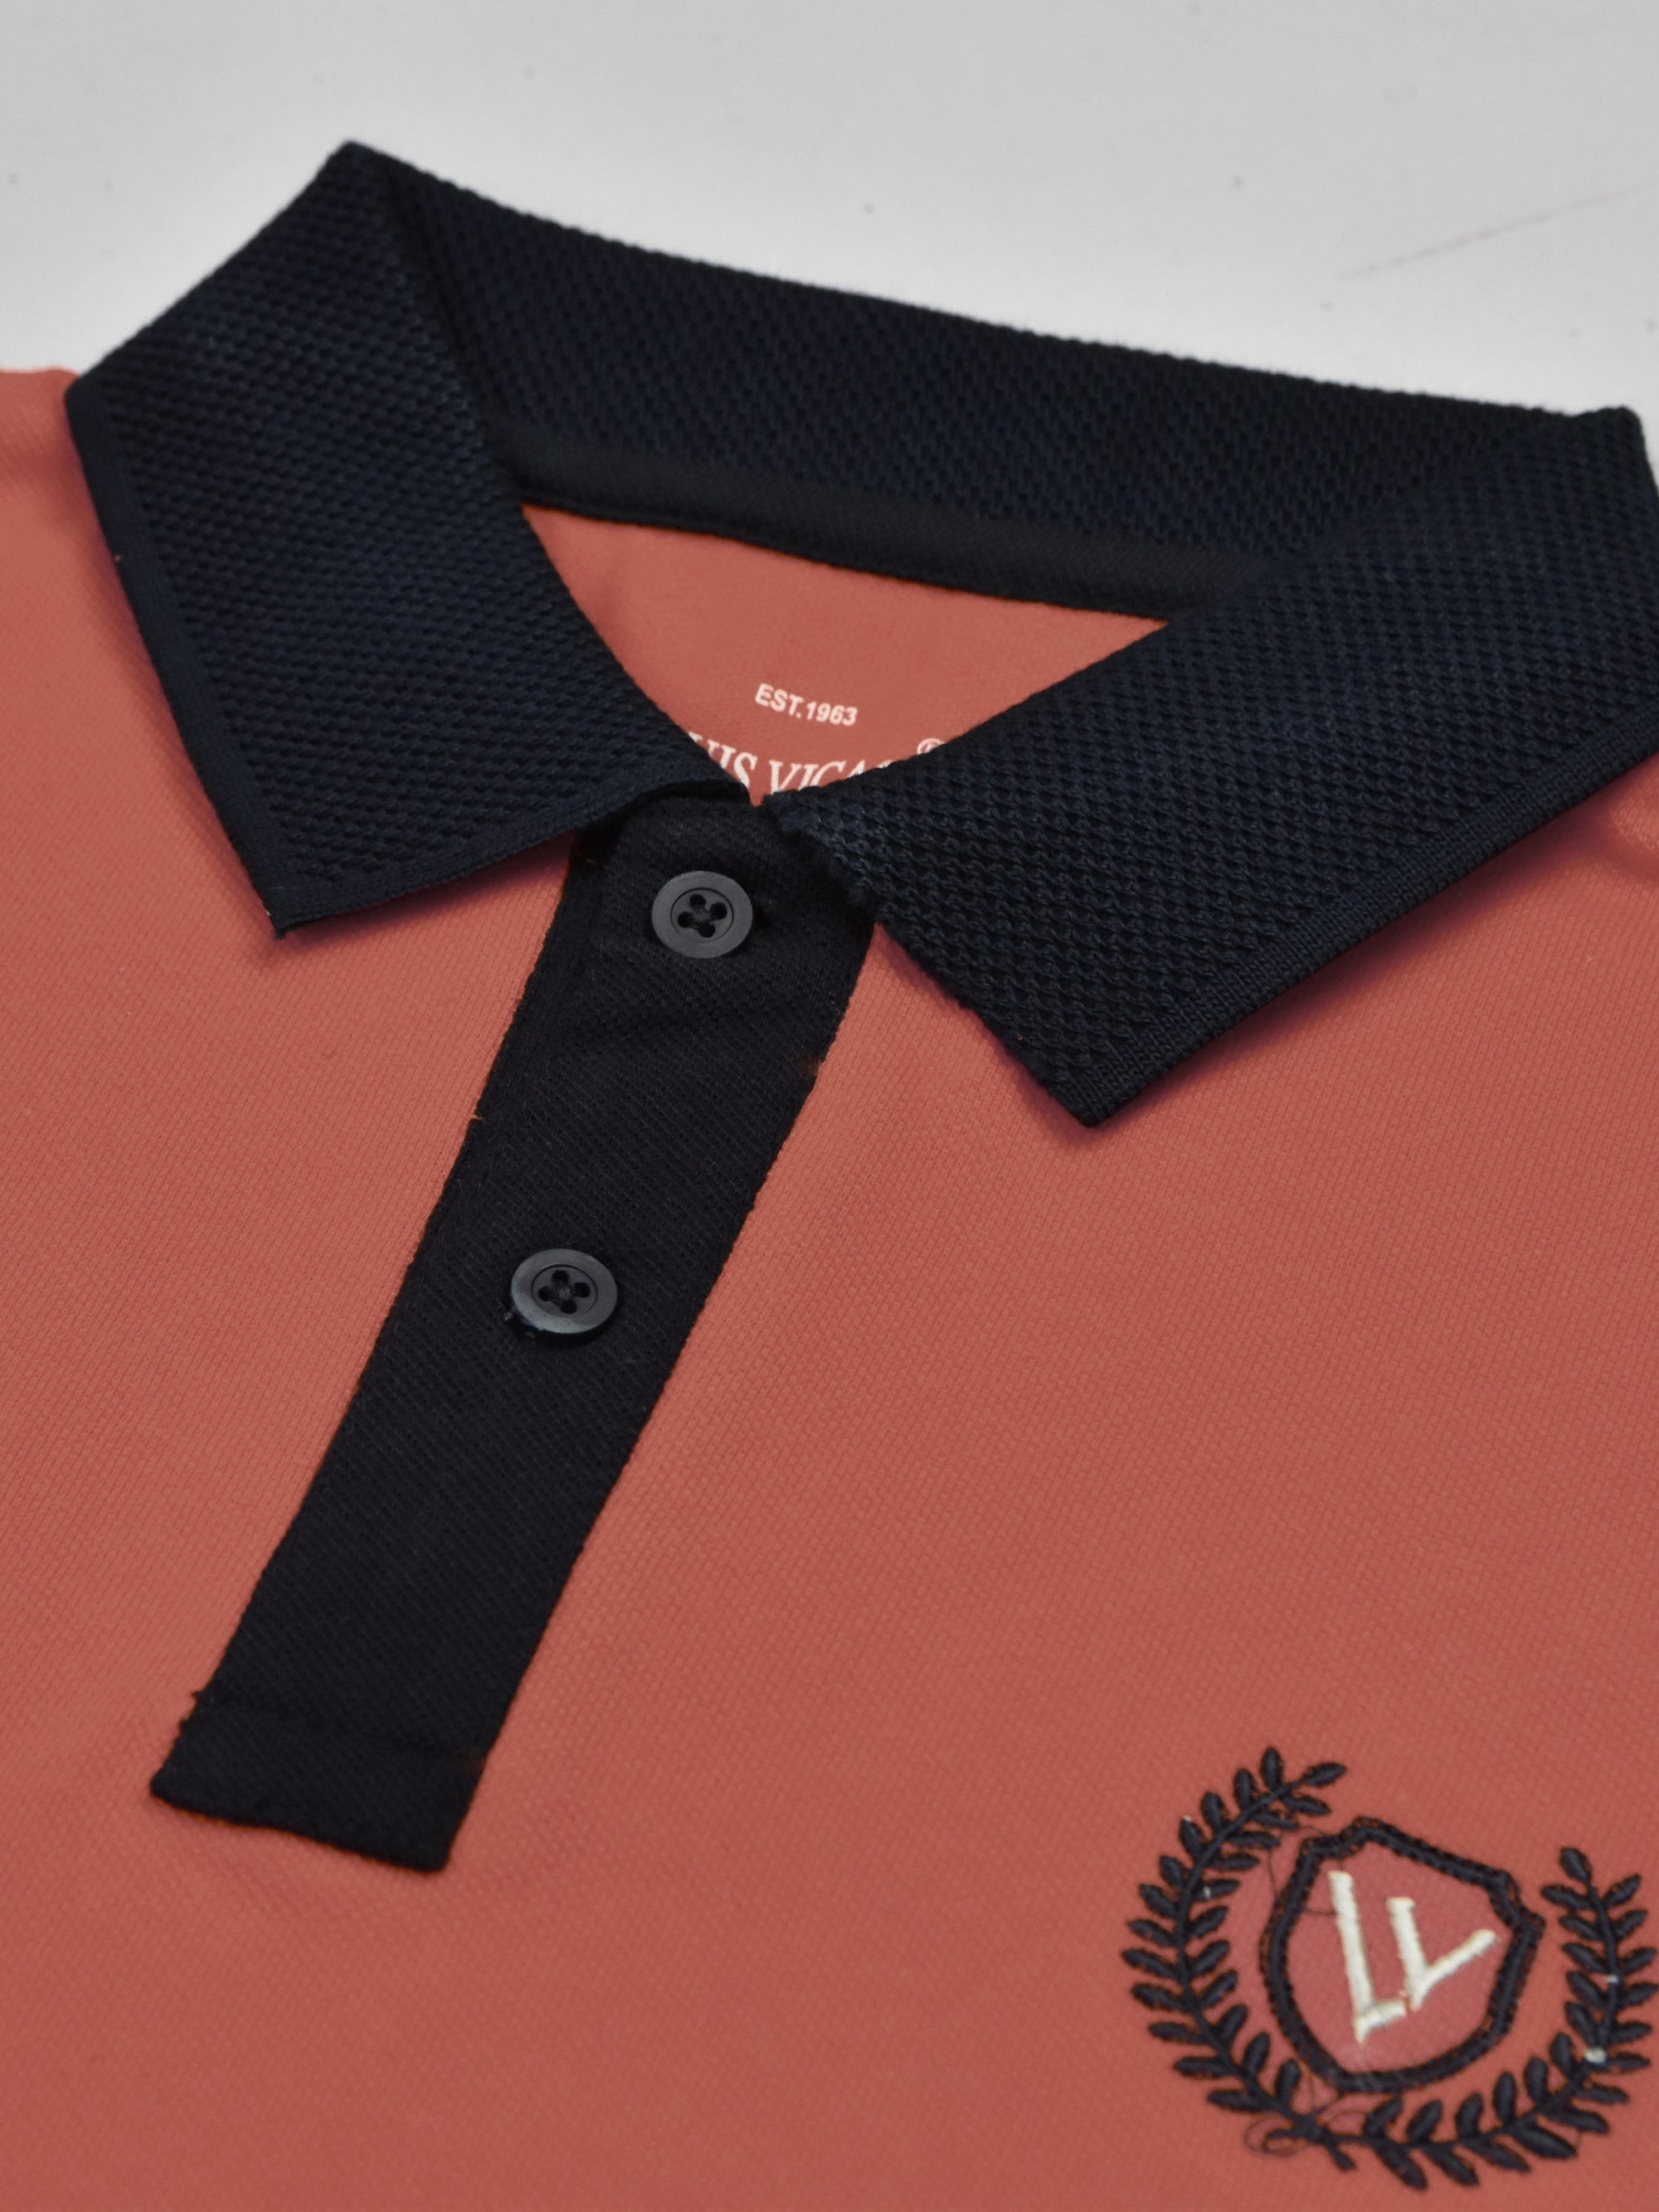 LV Summer Polo Shirt For Men-Carrot Red & Dark Navy-SP1546/RT2366